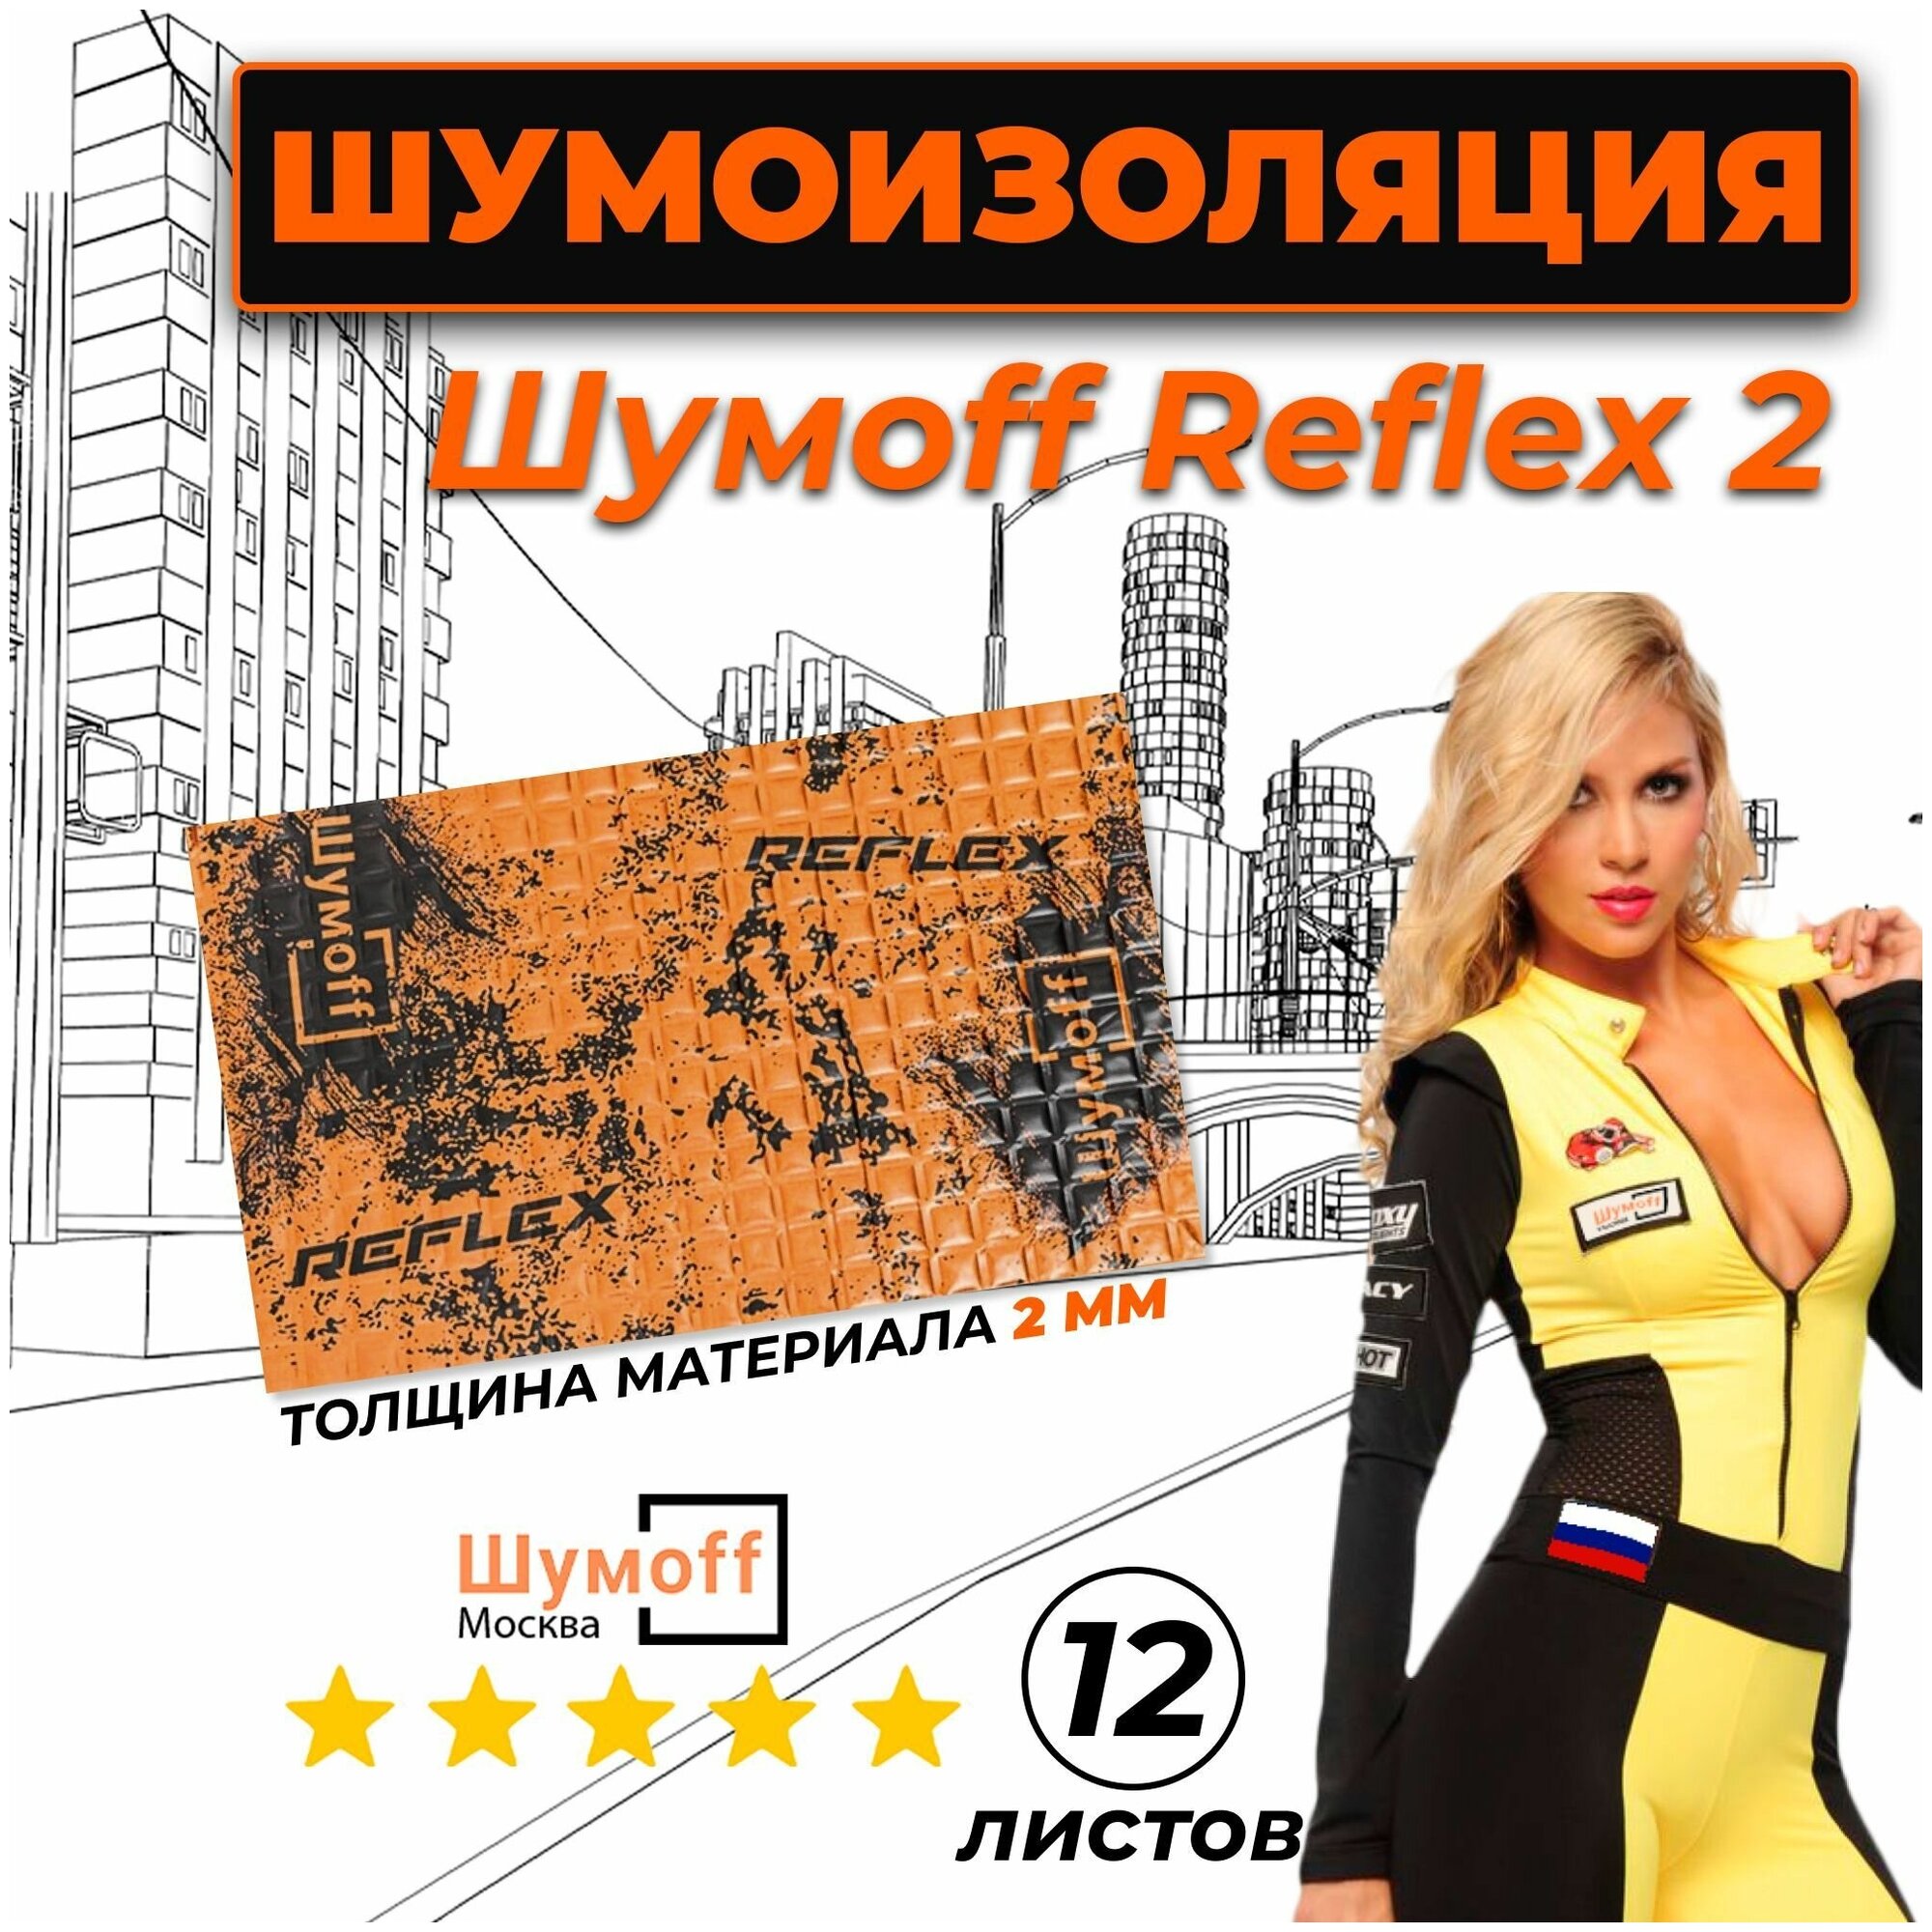 Виброизоляция Шумофф Reflex 2 (2 мм) 12 листов — купить в интернет-магазине по низкой цене на Яндекс Маркете